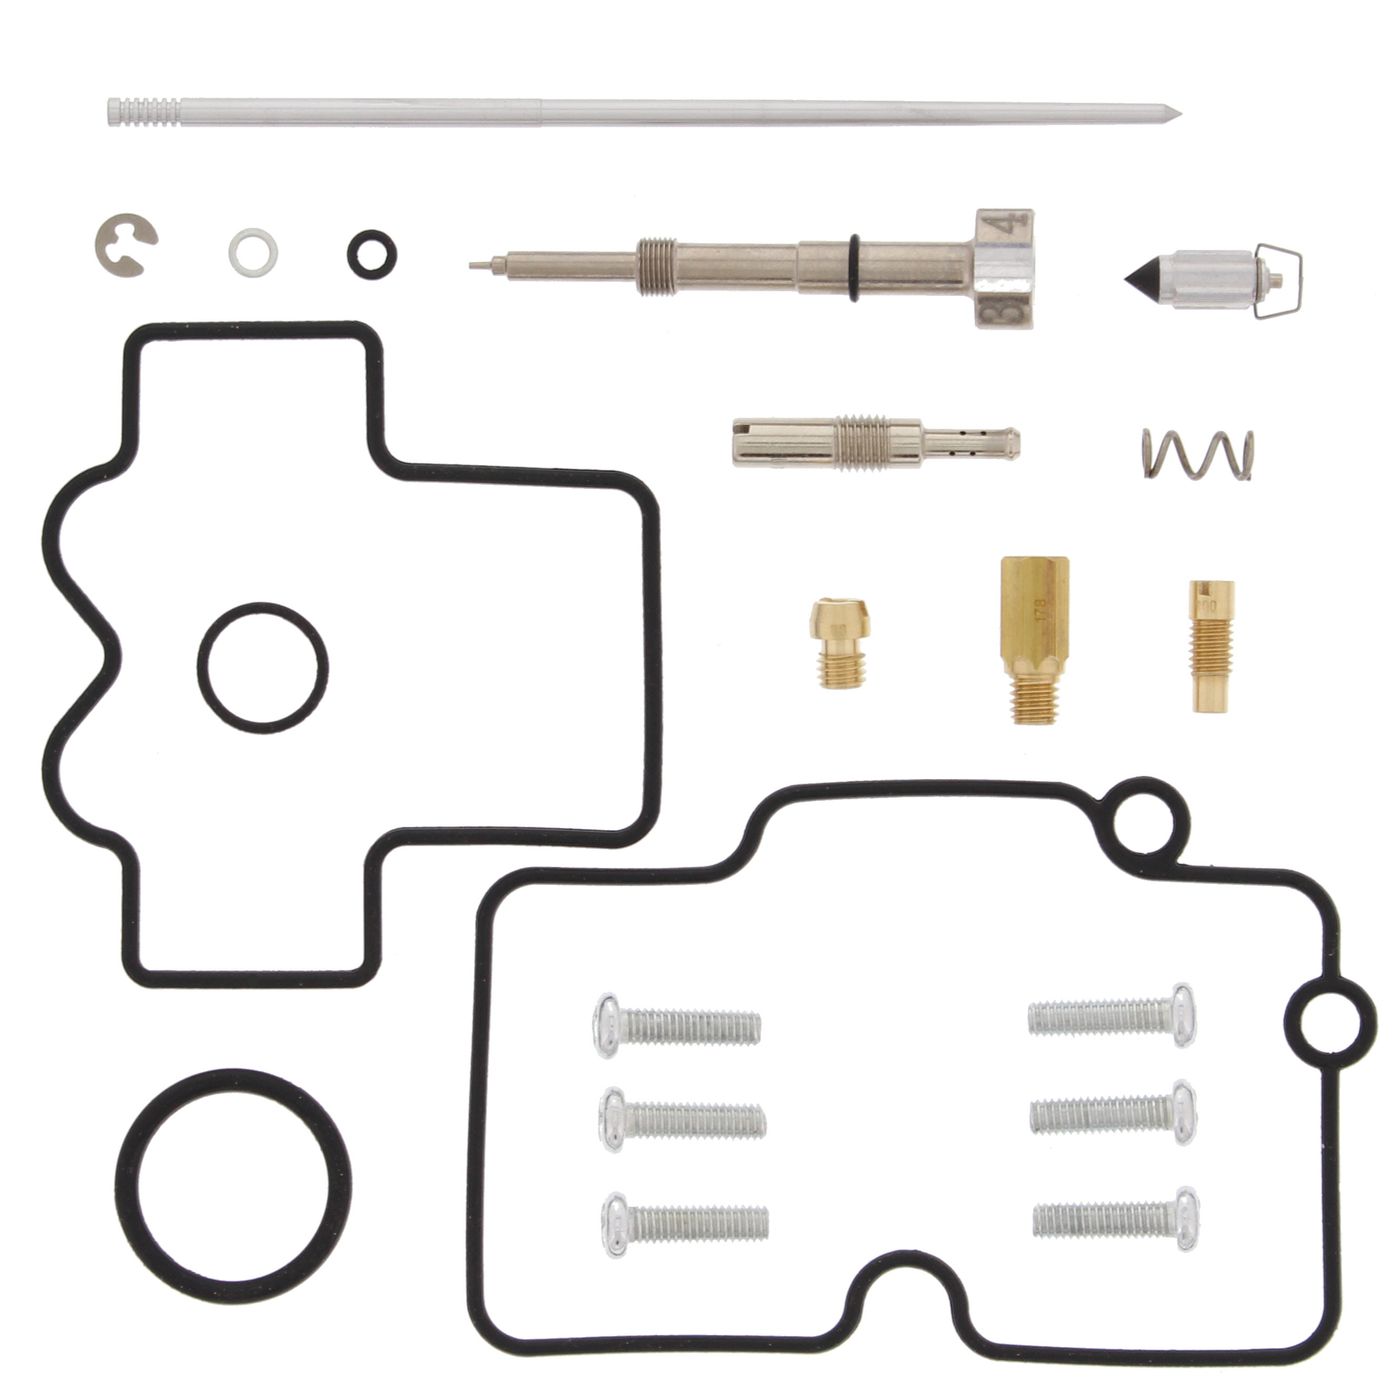 Wrp Carb Repair Kits - WRP261490 image